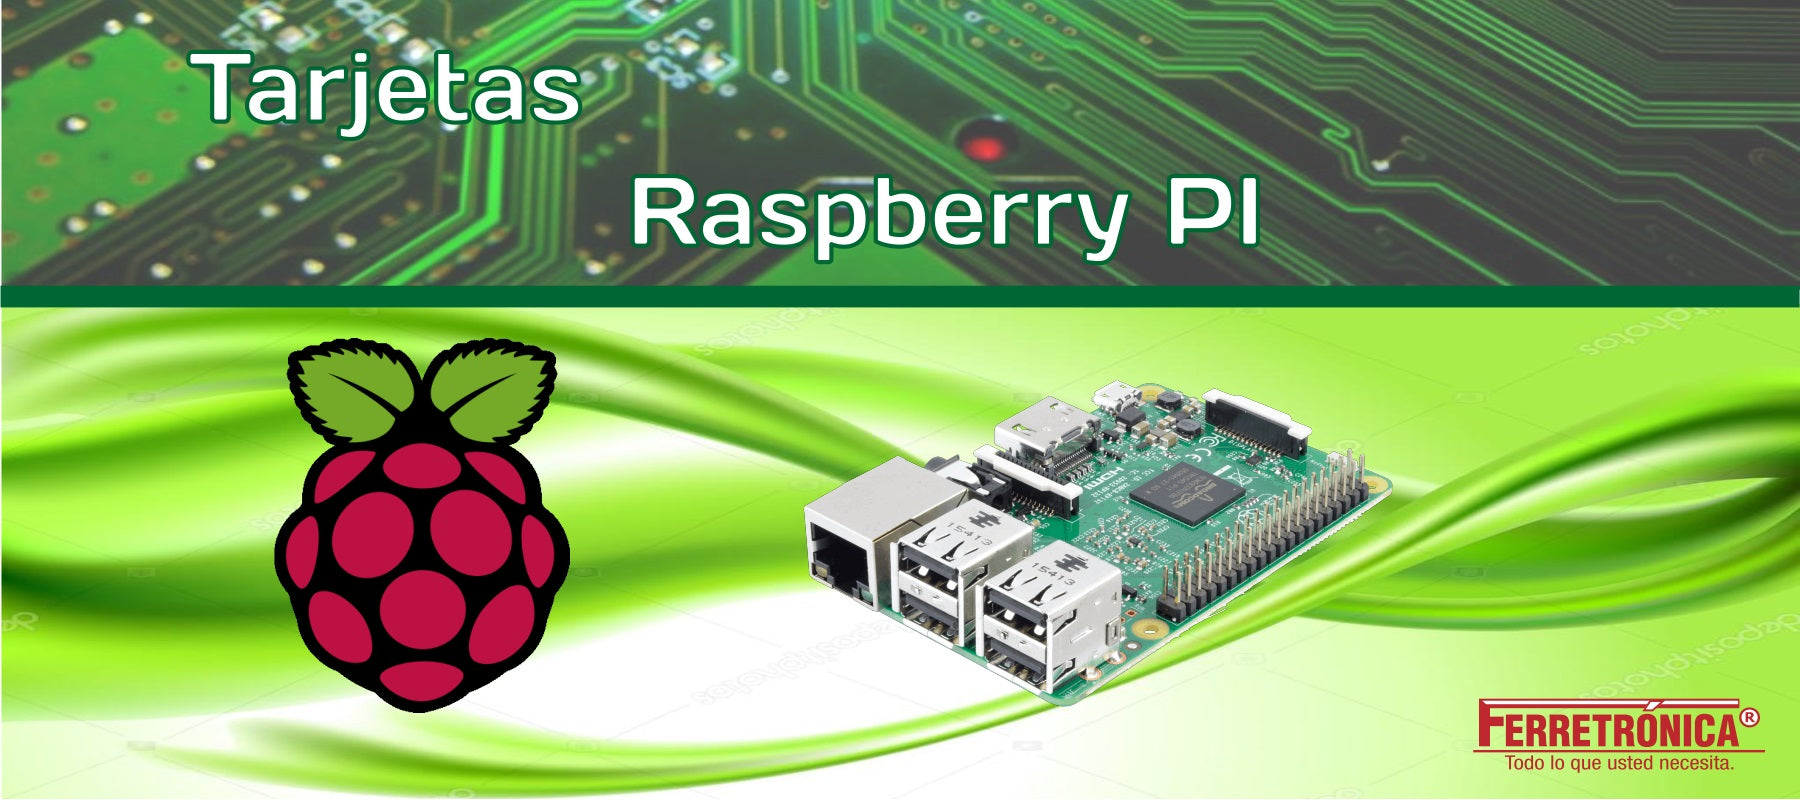 tarjetas raspberry PI para robótica y automatización, ferretrónica